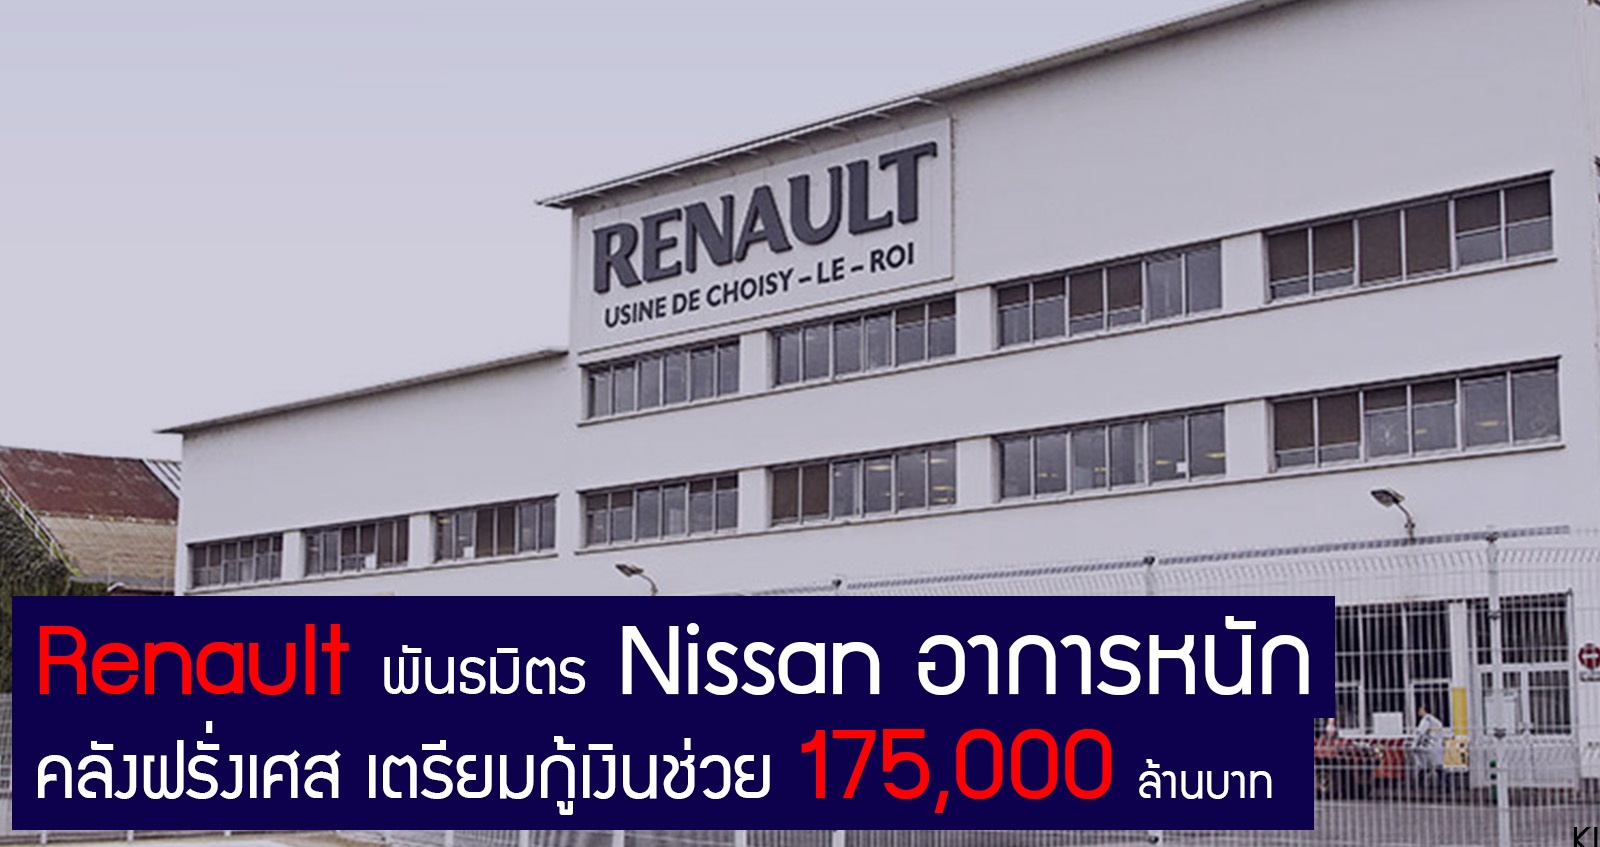 ฝรั่งเศส กำลังพิจารณา กู้เงิน 175,000 ล้านบาท ช่วย Renault พันธมิตร Nissan